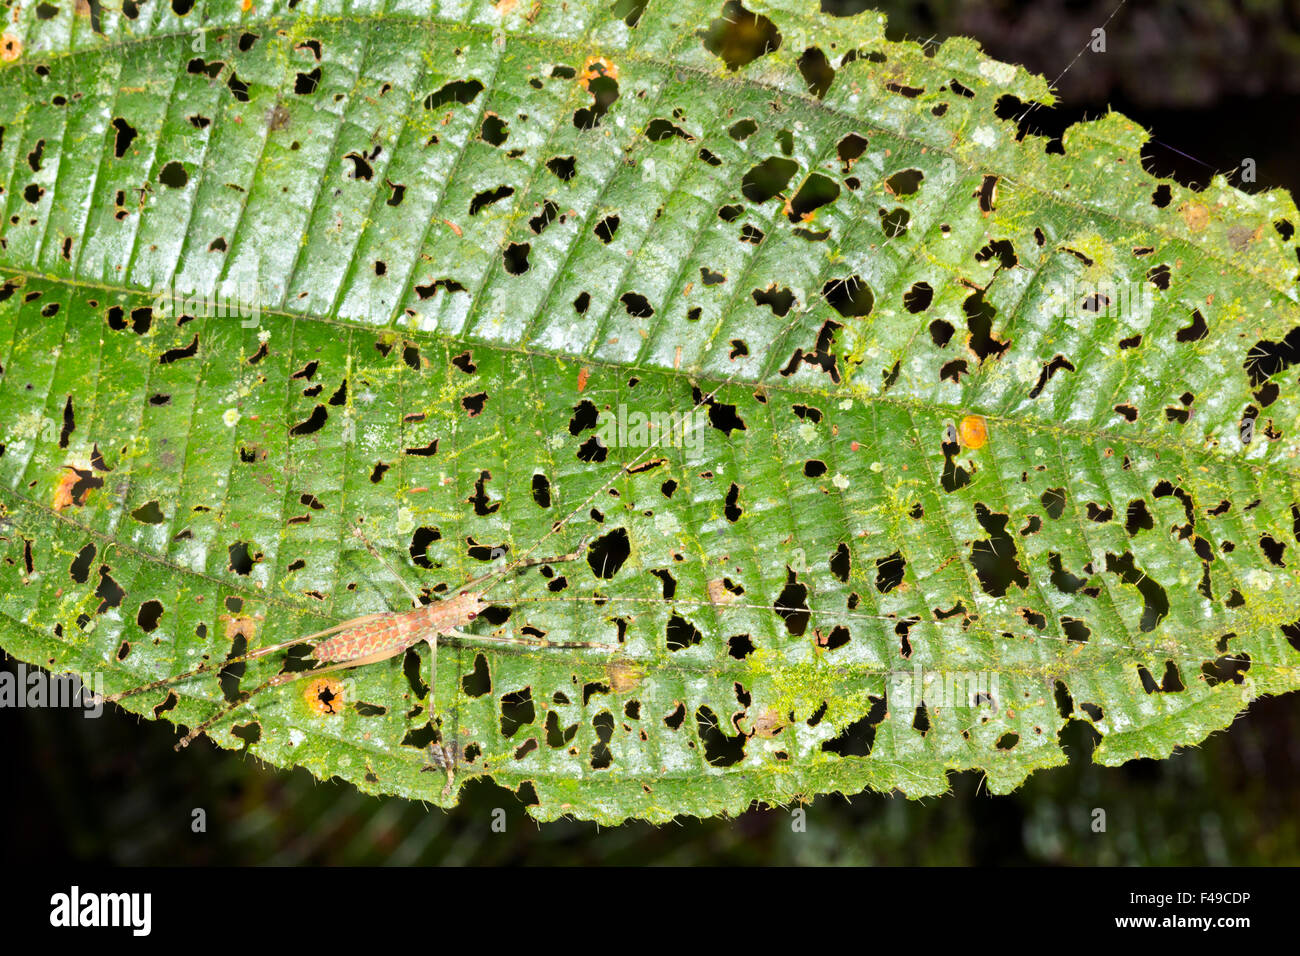 Grashuepfer Nymphe sitzt auf einem Blatt mit vielen Löchern gemacht durch browsing Insekten im Regenwald Unterwuchs, Ecuador Stockfoto